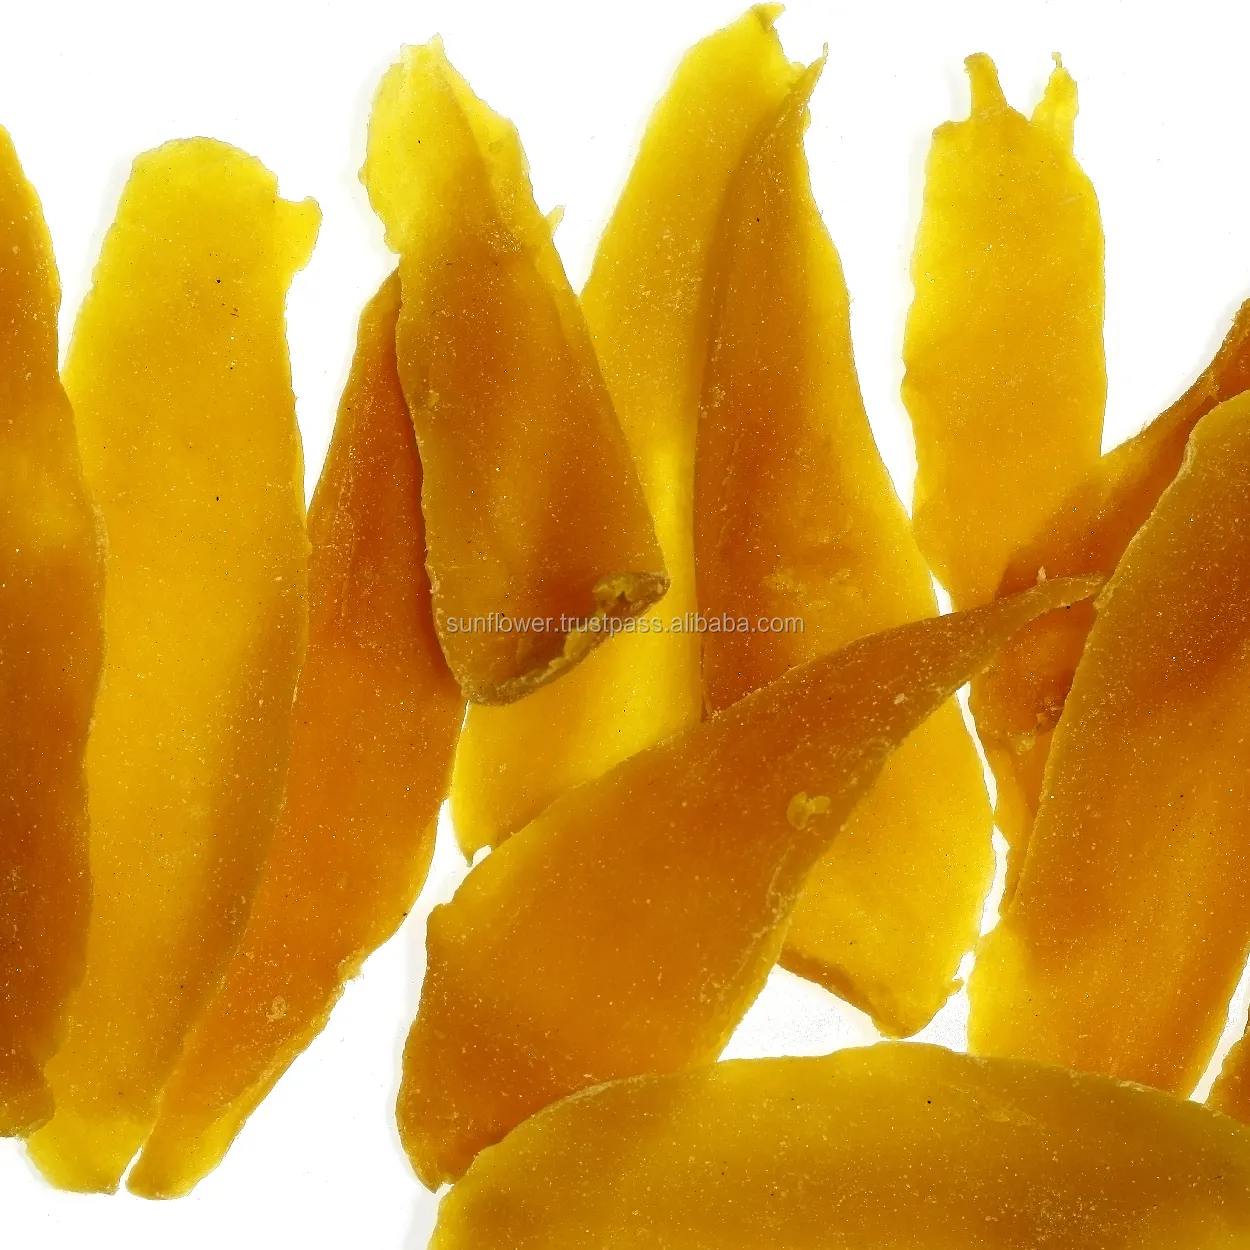 Тайский мягкий сухой манго ломтик с низким содержанием сахара 100% натуральный So2 ниже ppm